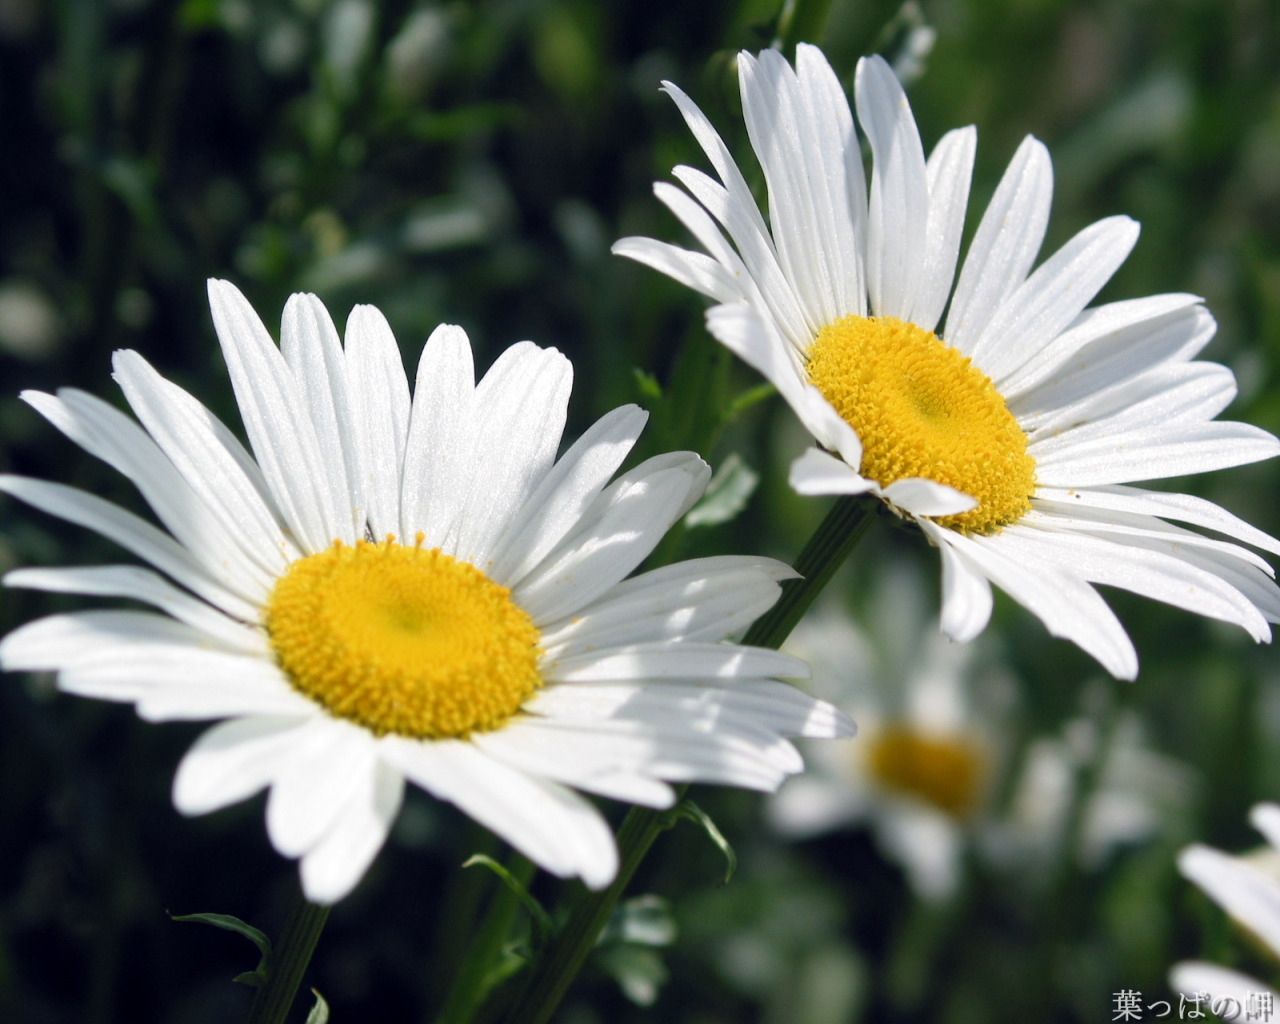 金盏花 花卉 夏天 - Pixabay上的免费照片